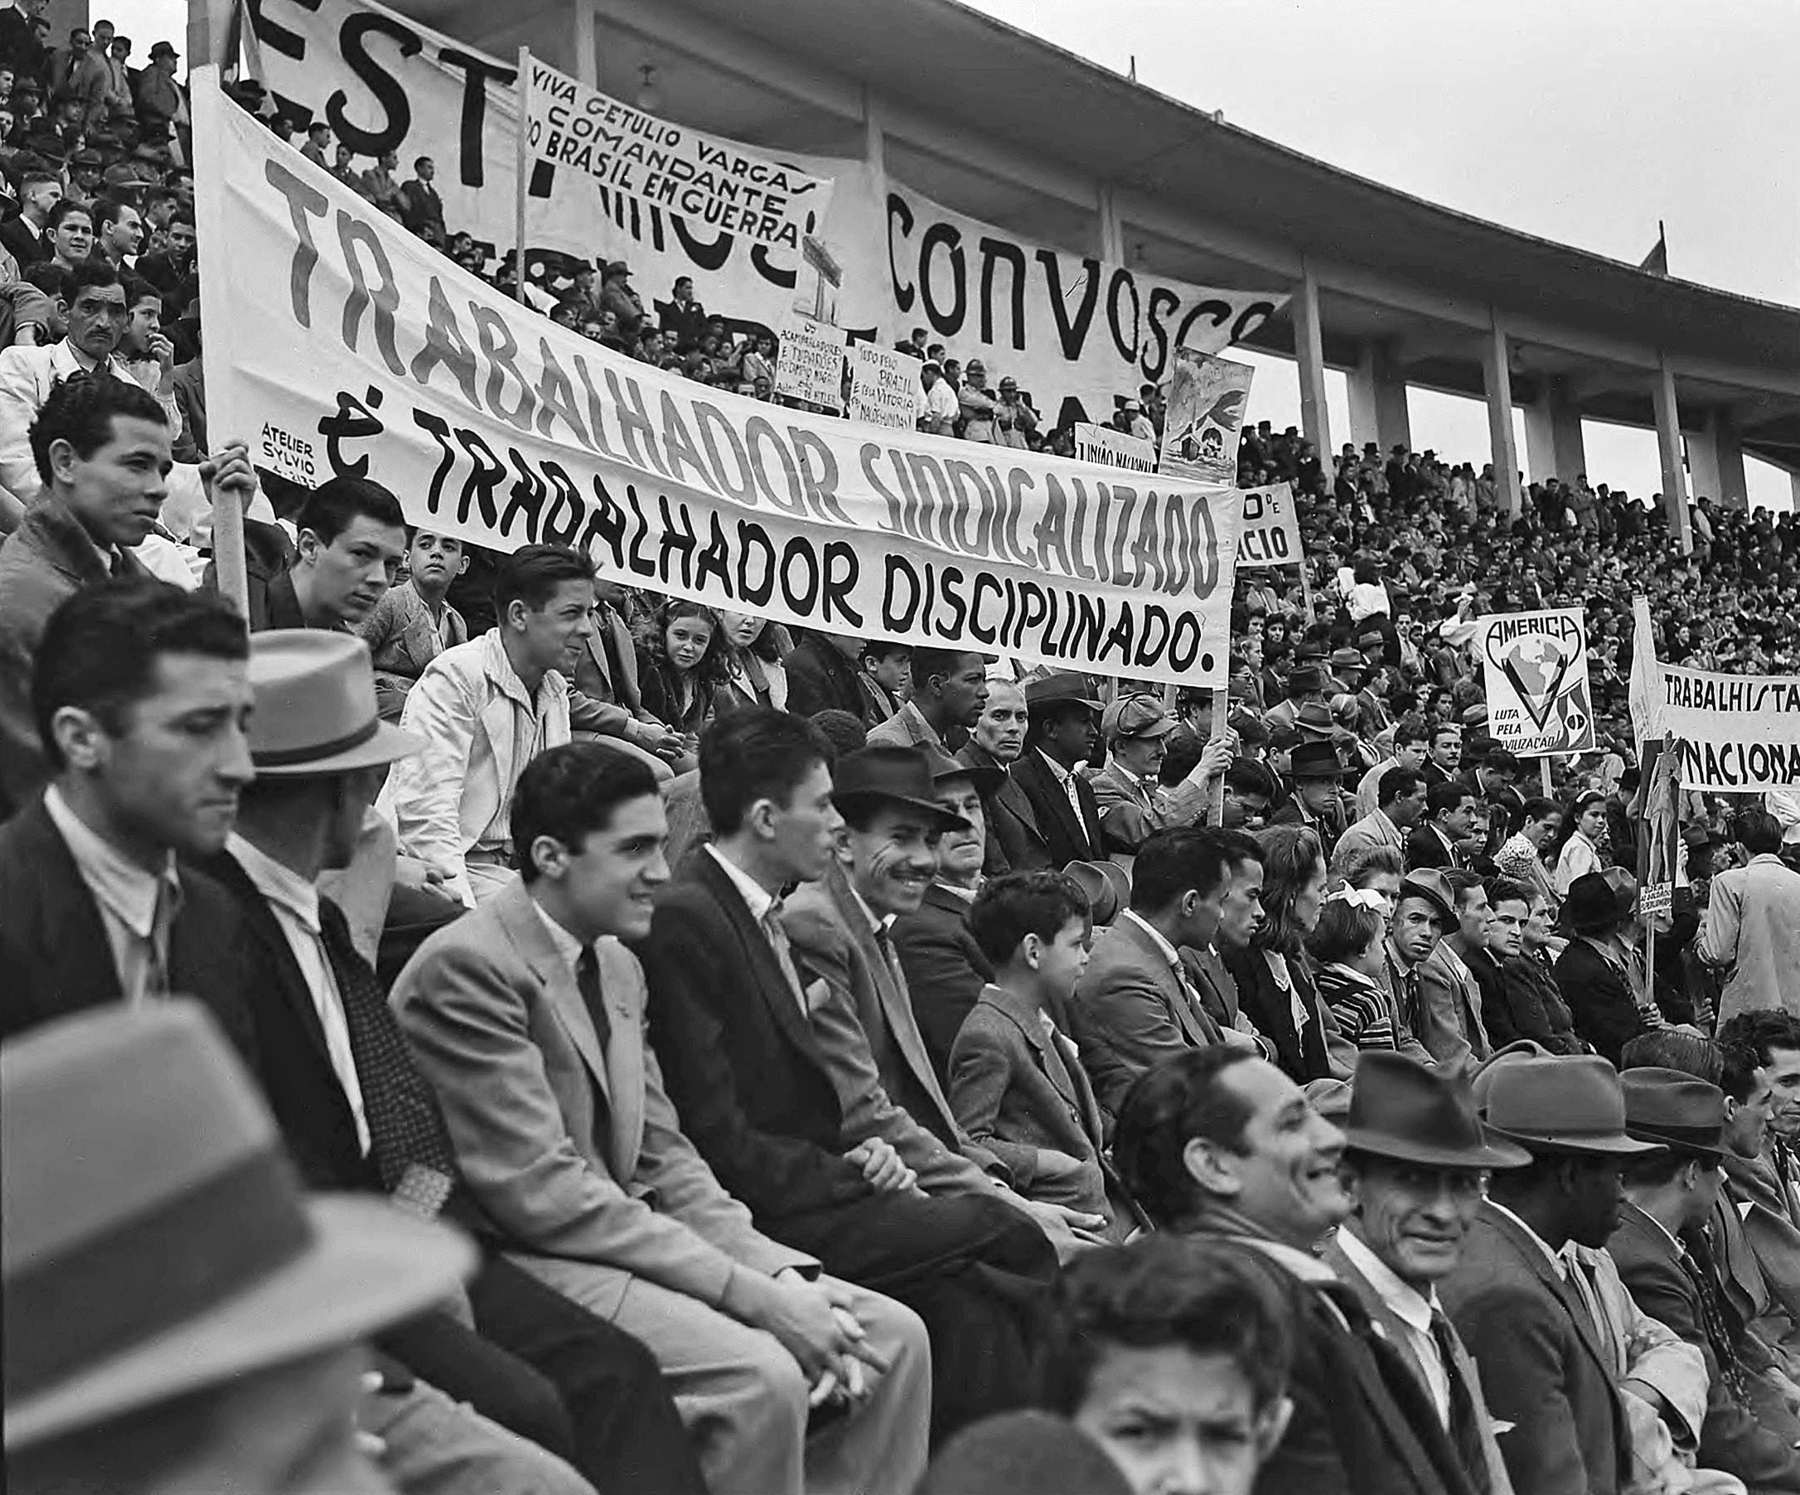 Fotografia em preto e branco. Uma multidão de pessoas sentadas lado a lado e arquibancadas, portando faixas diversas.